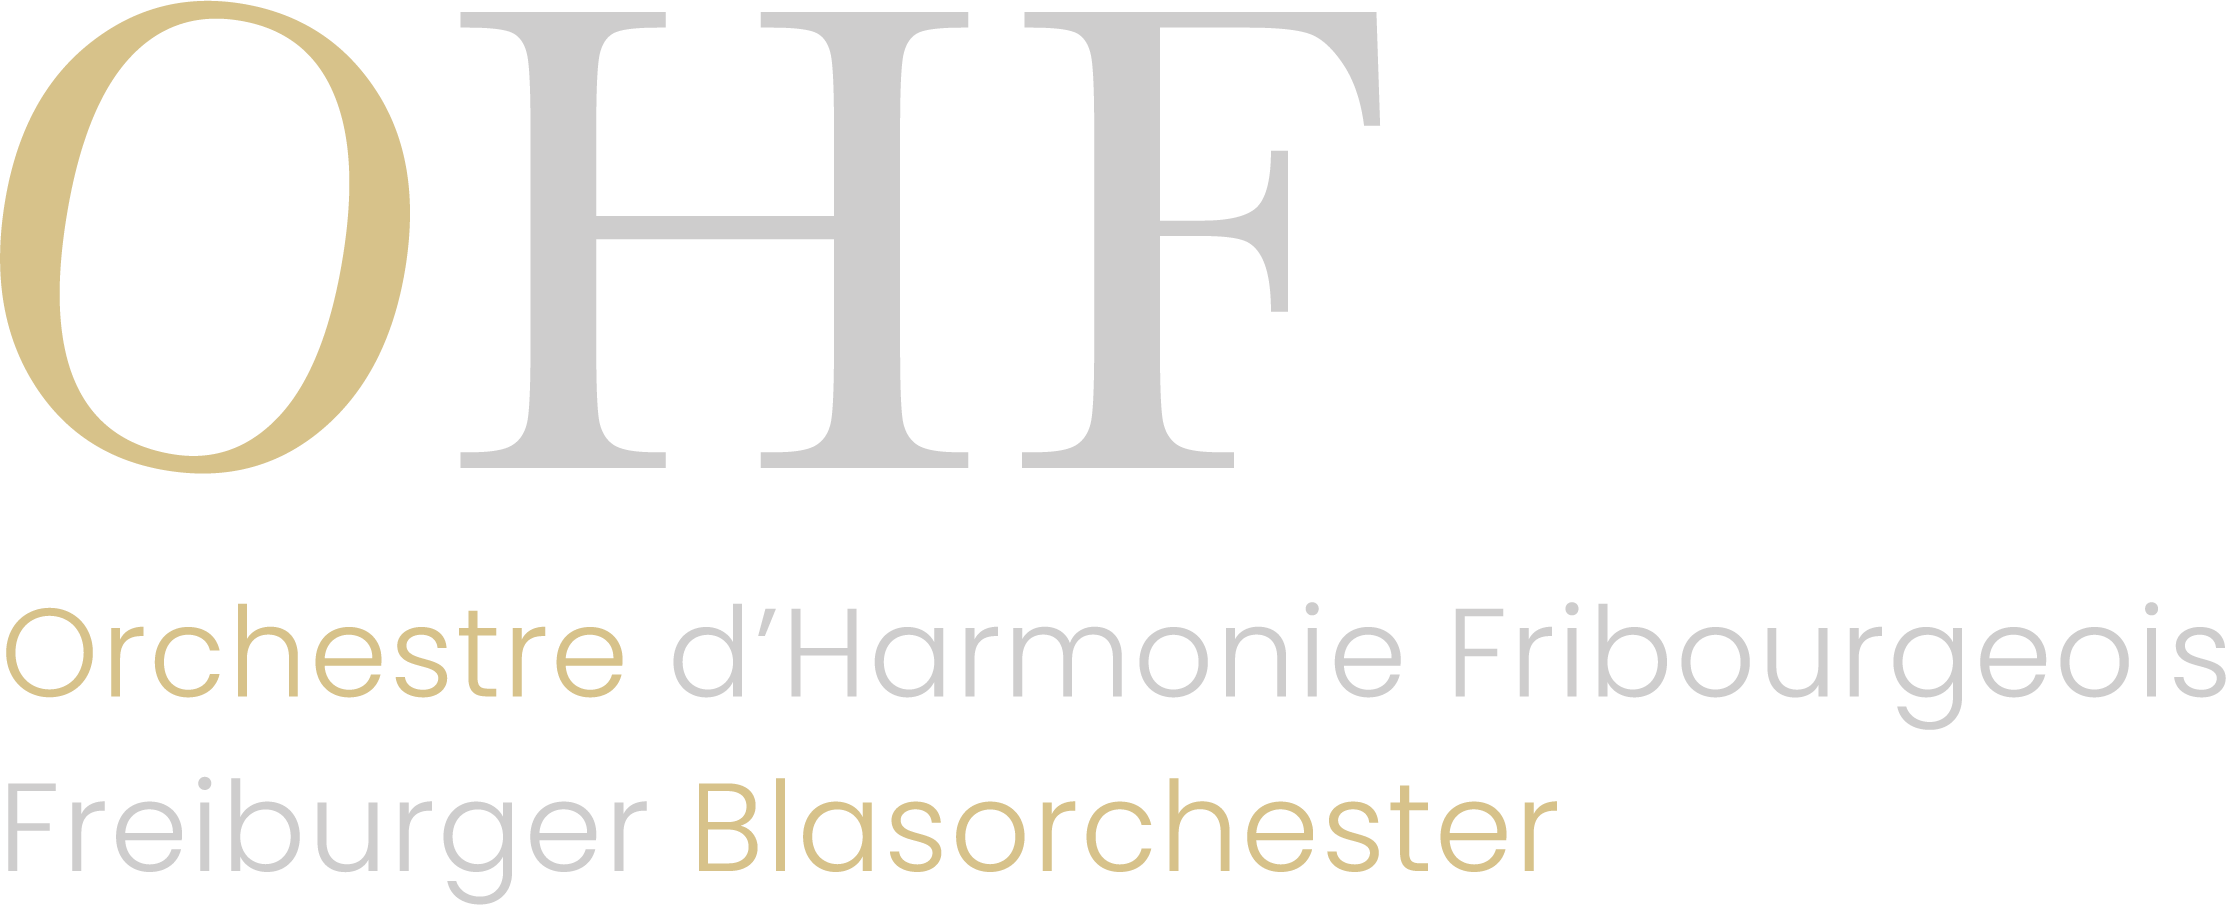 Logotype de l'Orchestre d'Harmonie Fribourgeois